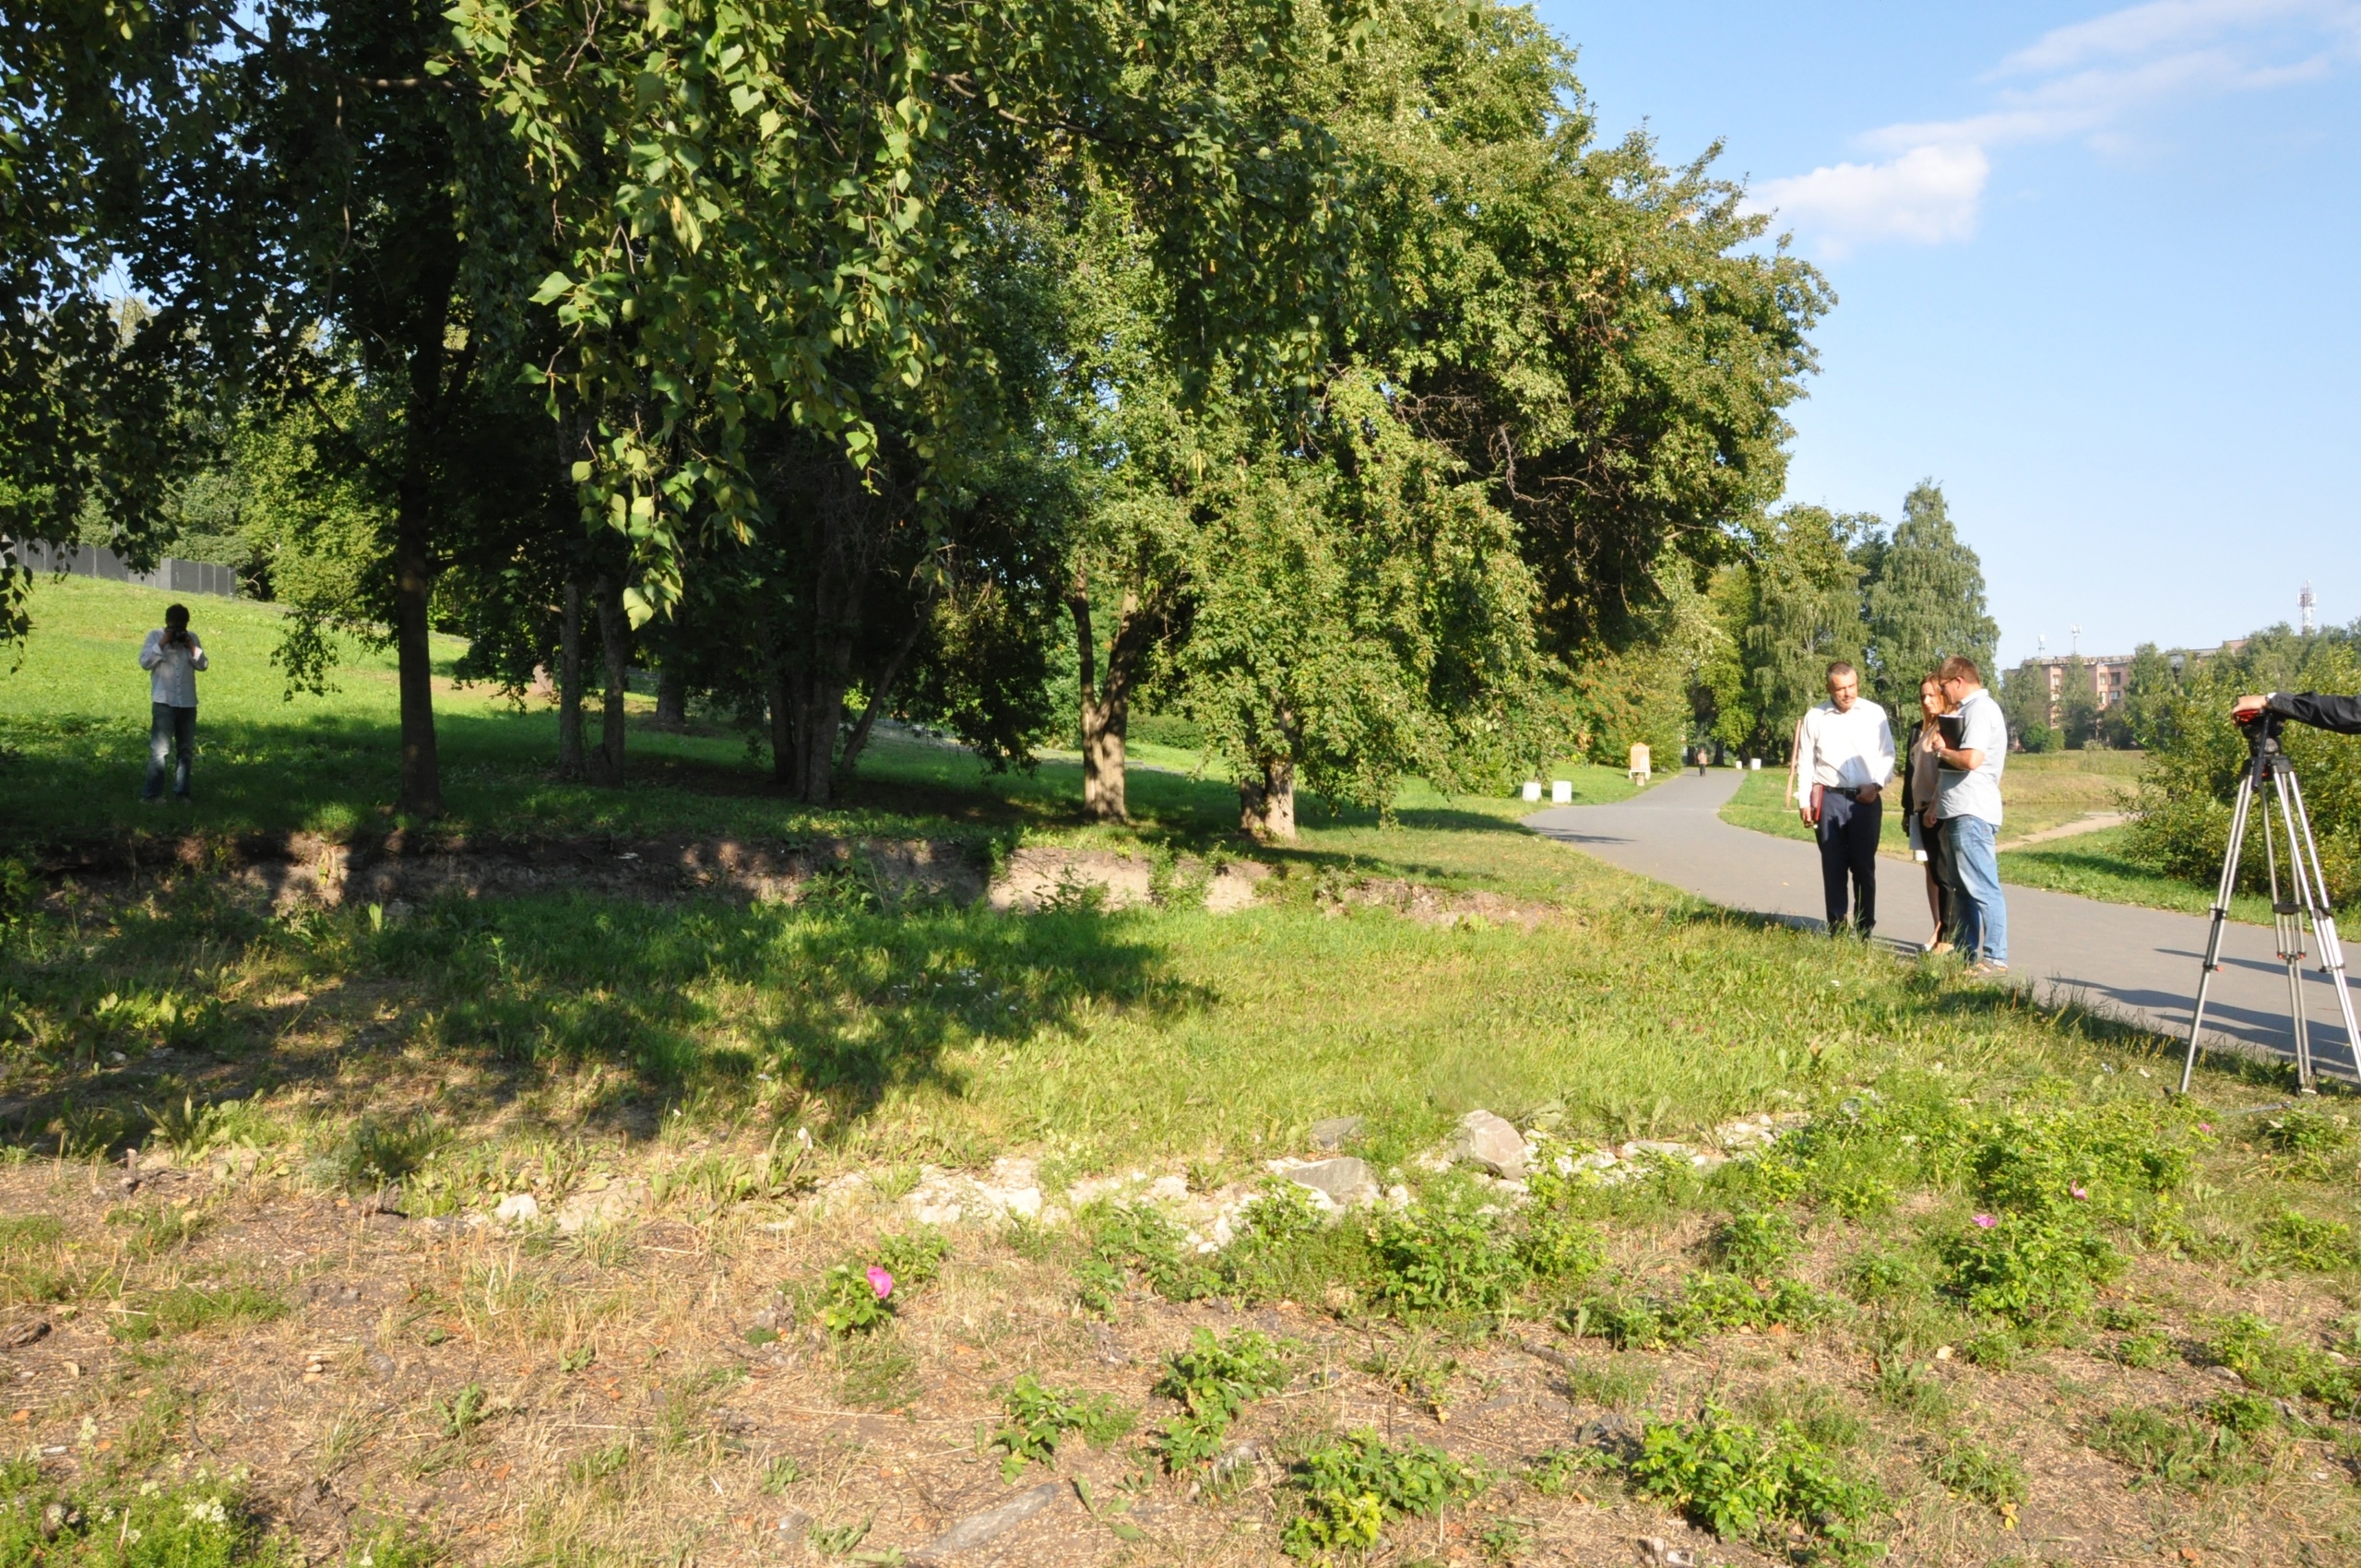 Zaretskin puistoon nousee uusi ympäristötaideteos. Lisäksi kunnostetaan aktiviteettialueet. Kuva: Petroskoin kaupunginjohtaja Vladimir Ljubarskin VKontakte-tili